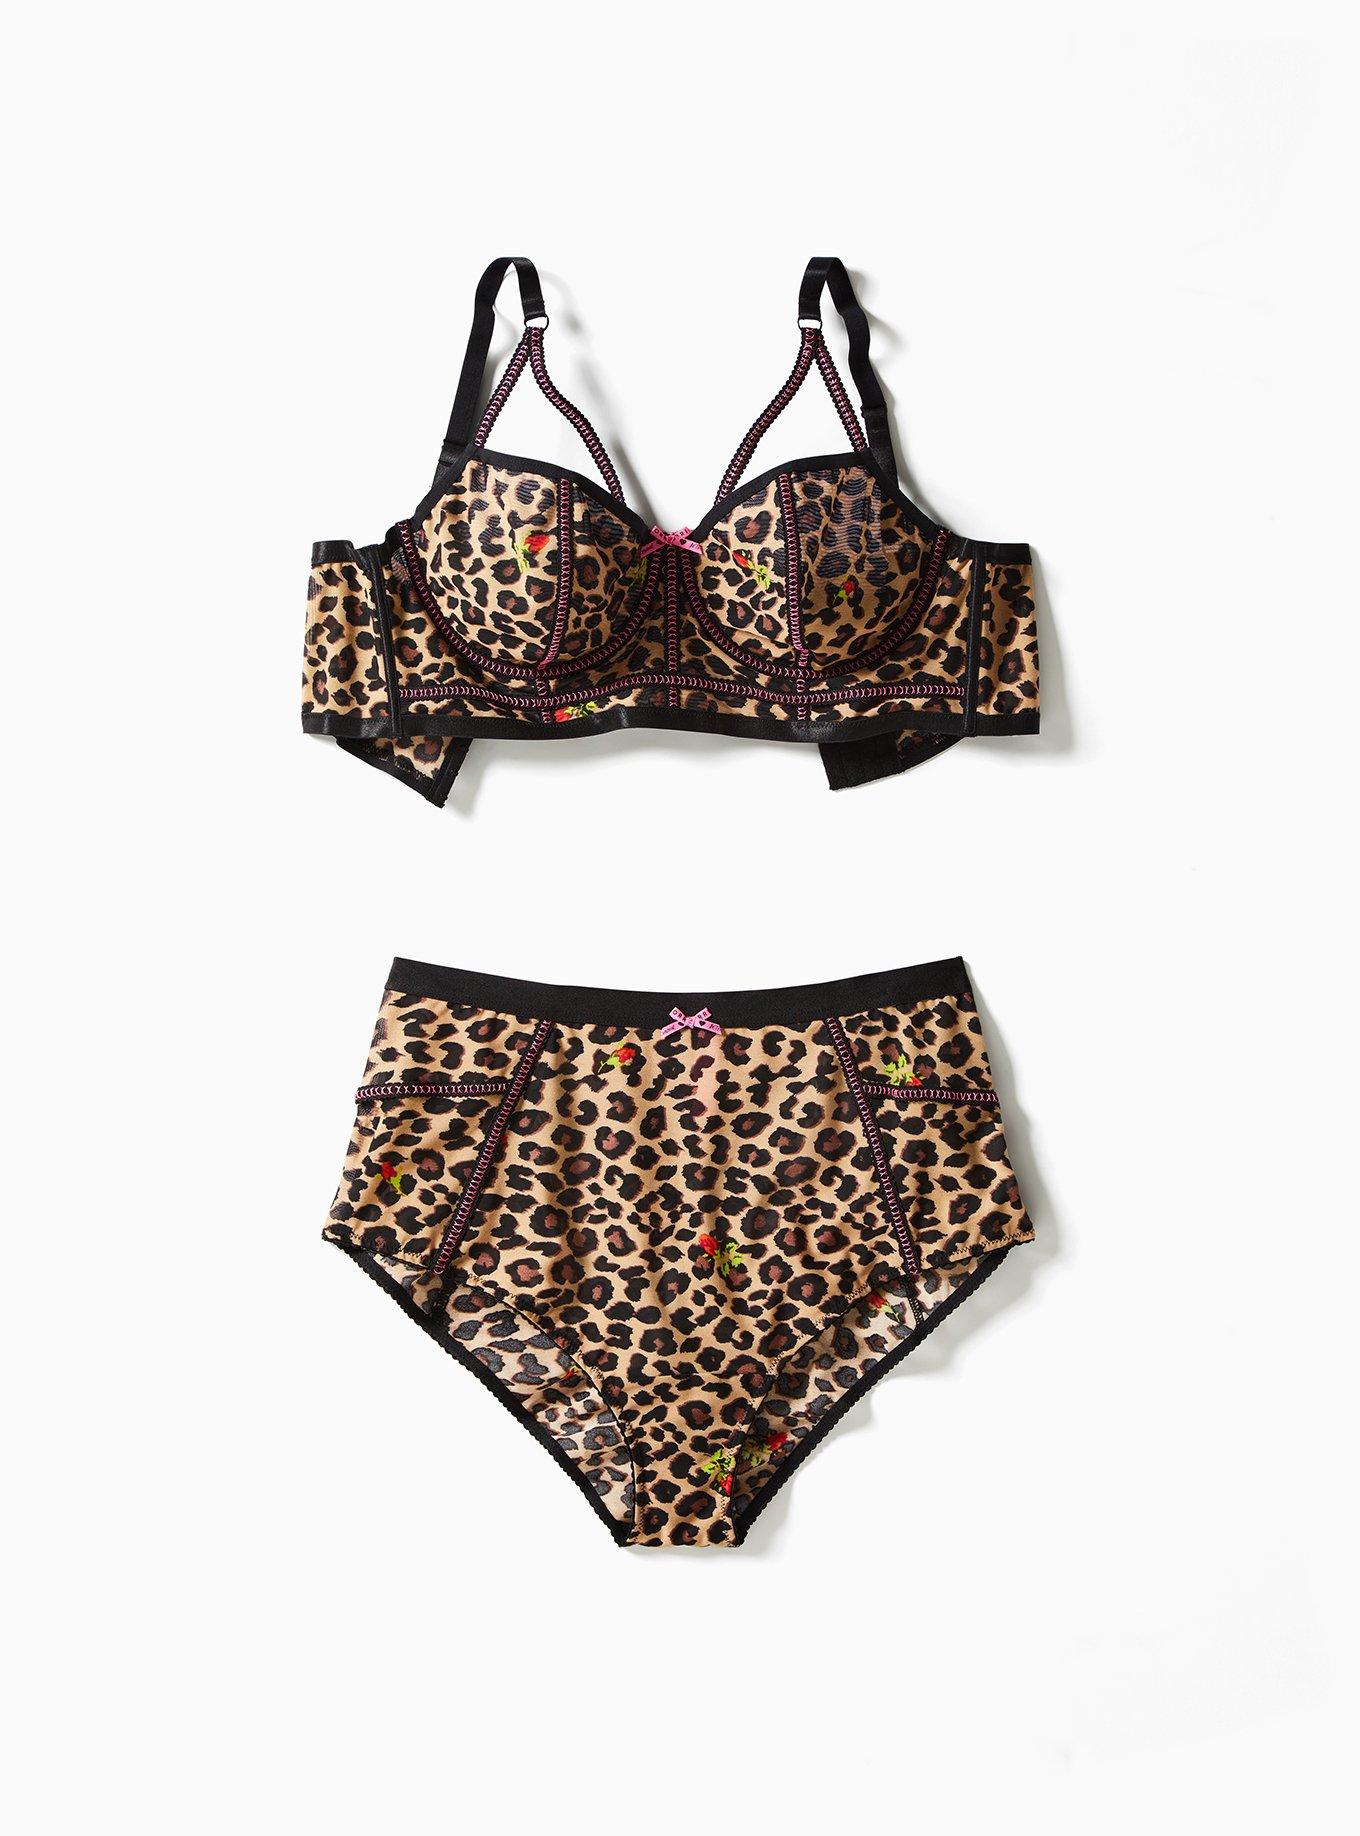 Xiushiren Women's Leopard Lace Underwear Set 36D-46G Plus Size